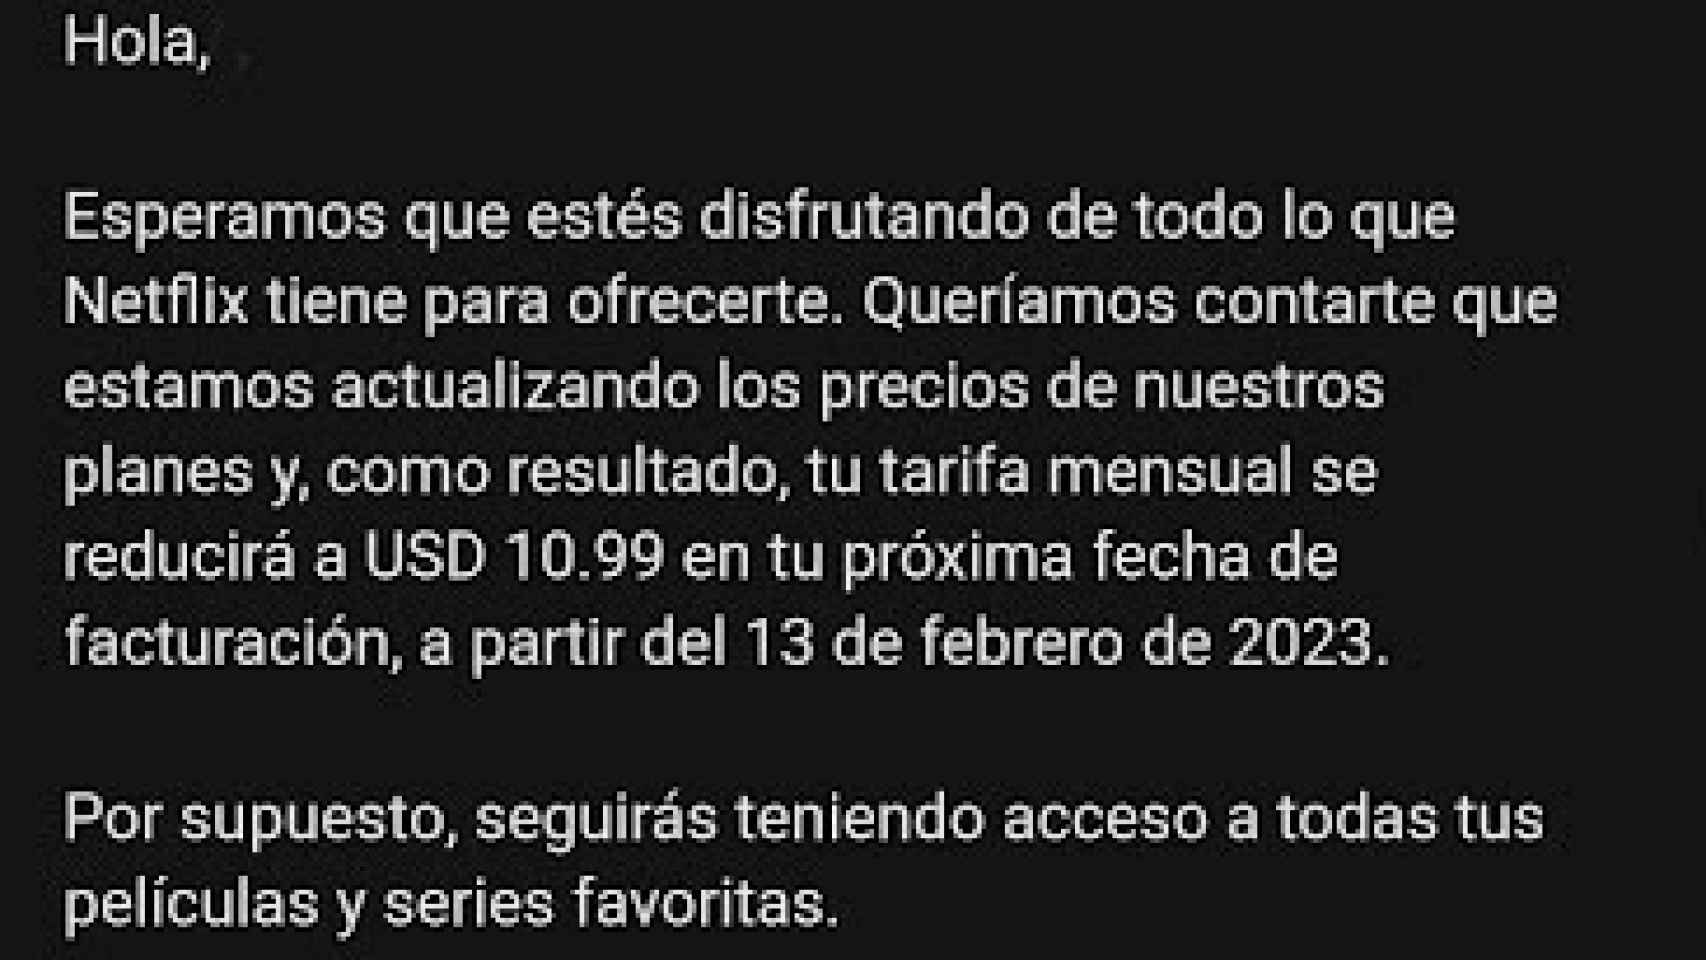 Este es el aviso de Netflix a algunos de sus clientes en Latinoamérica.